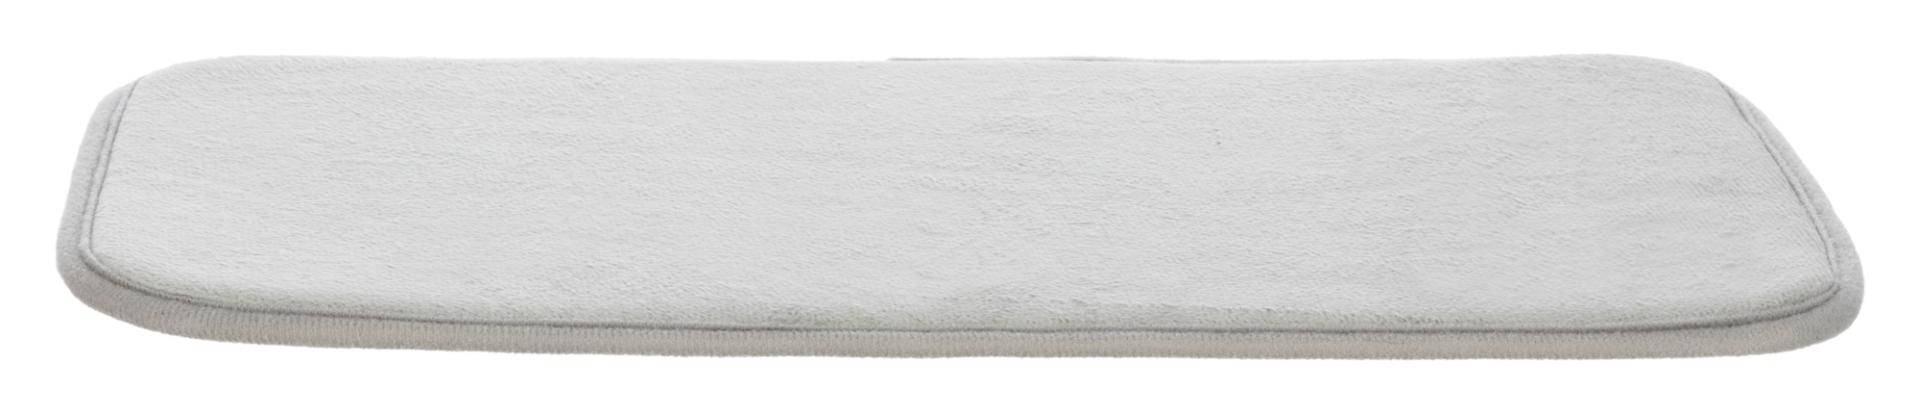 TRIXIE Anti-Rutsch Thermoeinlage für Capri 2 #3982, 26 x 46 cm, grau